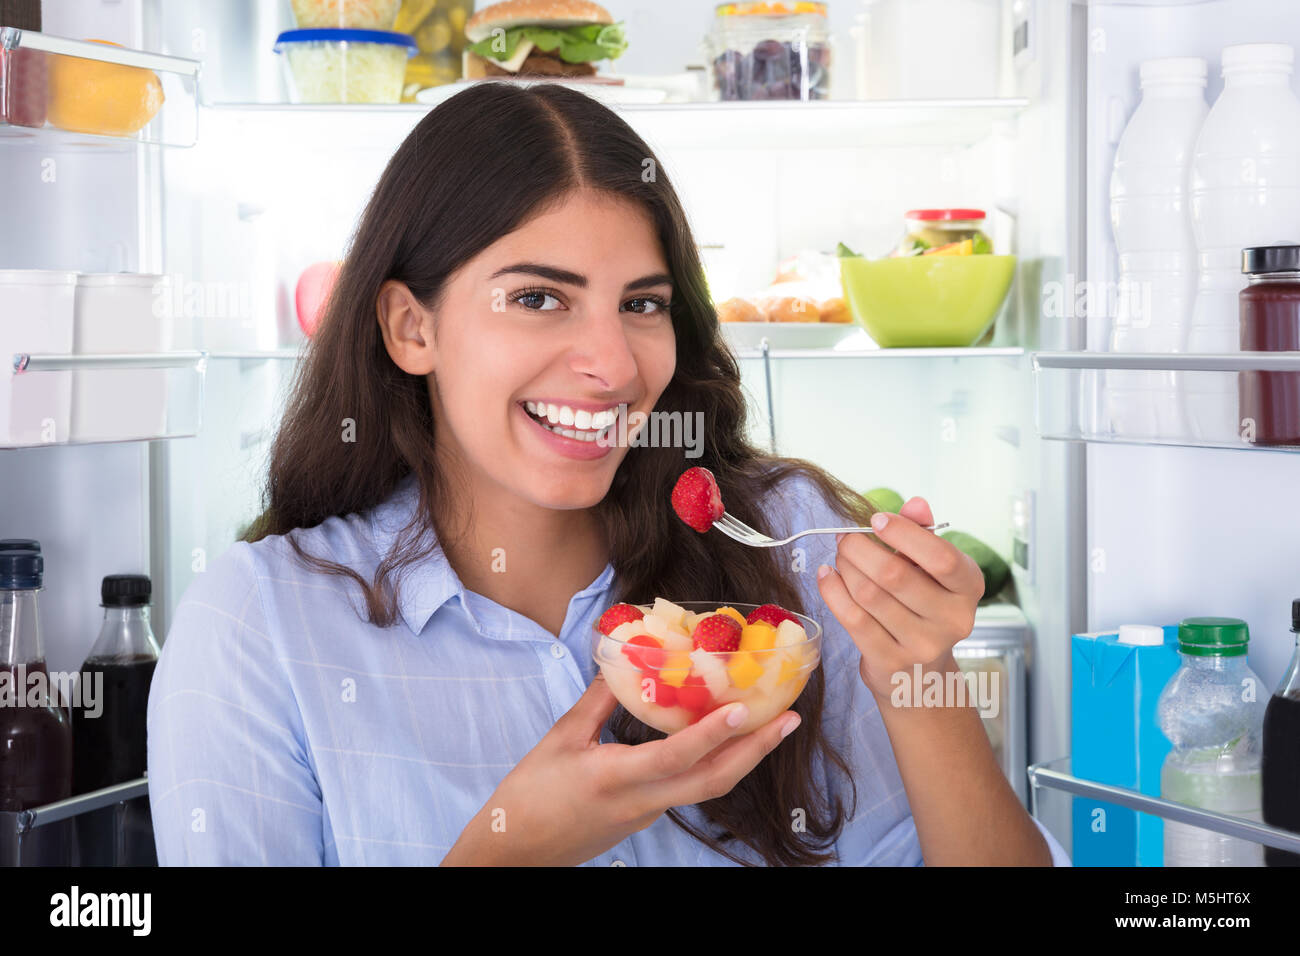 Nahaufnahme einer jungen Frau das Essen von frischem Obst in der Schüssel Stockfoto